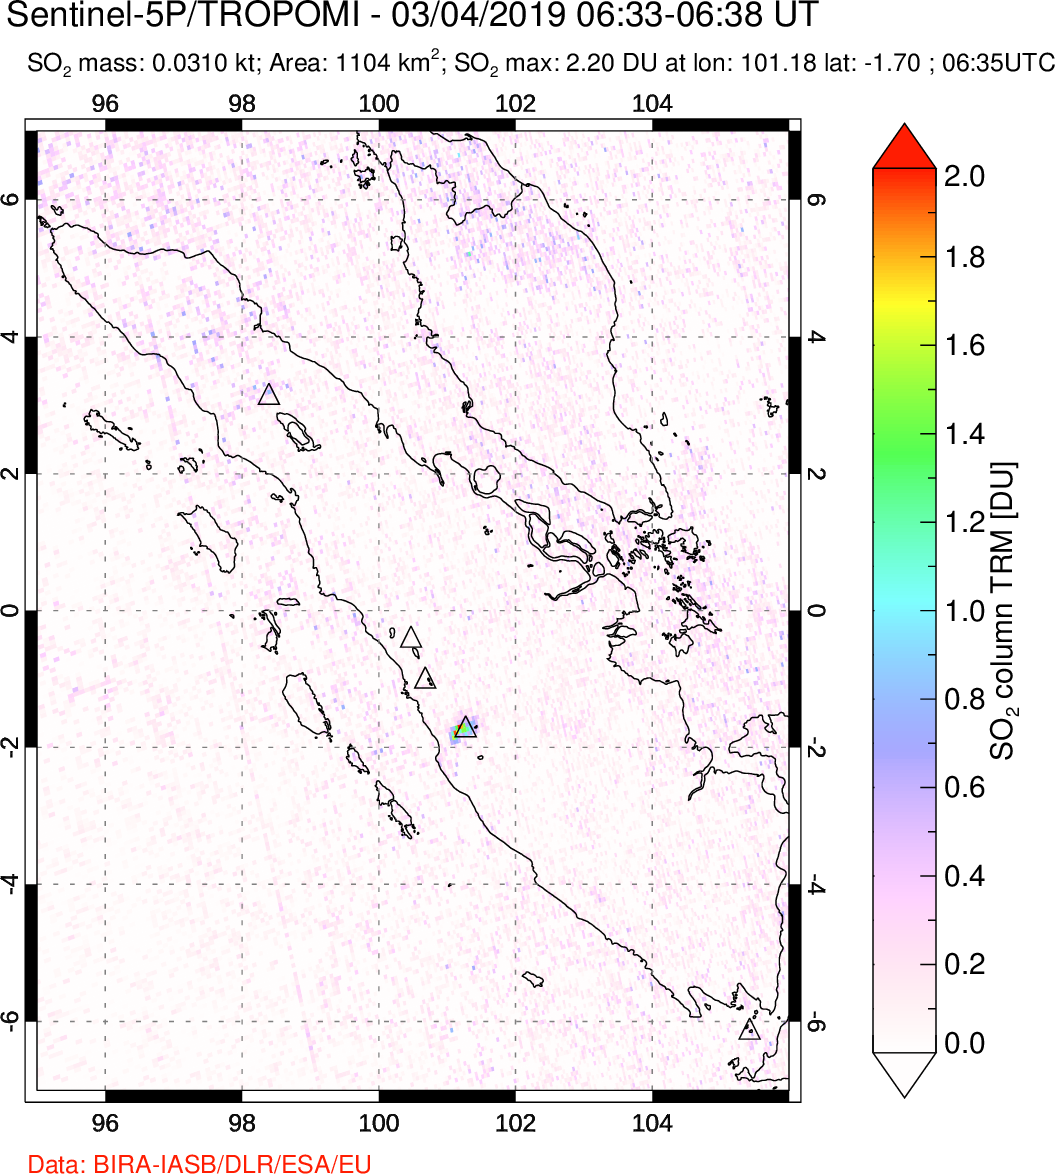 A sulfur dioxide image over Sumatra, Indonesia on Mar 04, 2019.